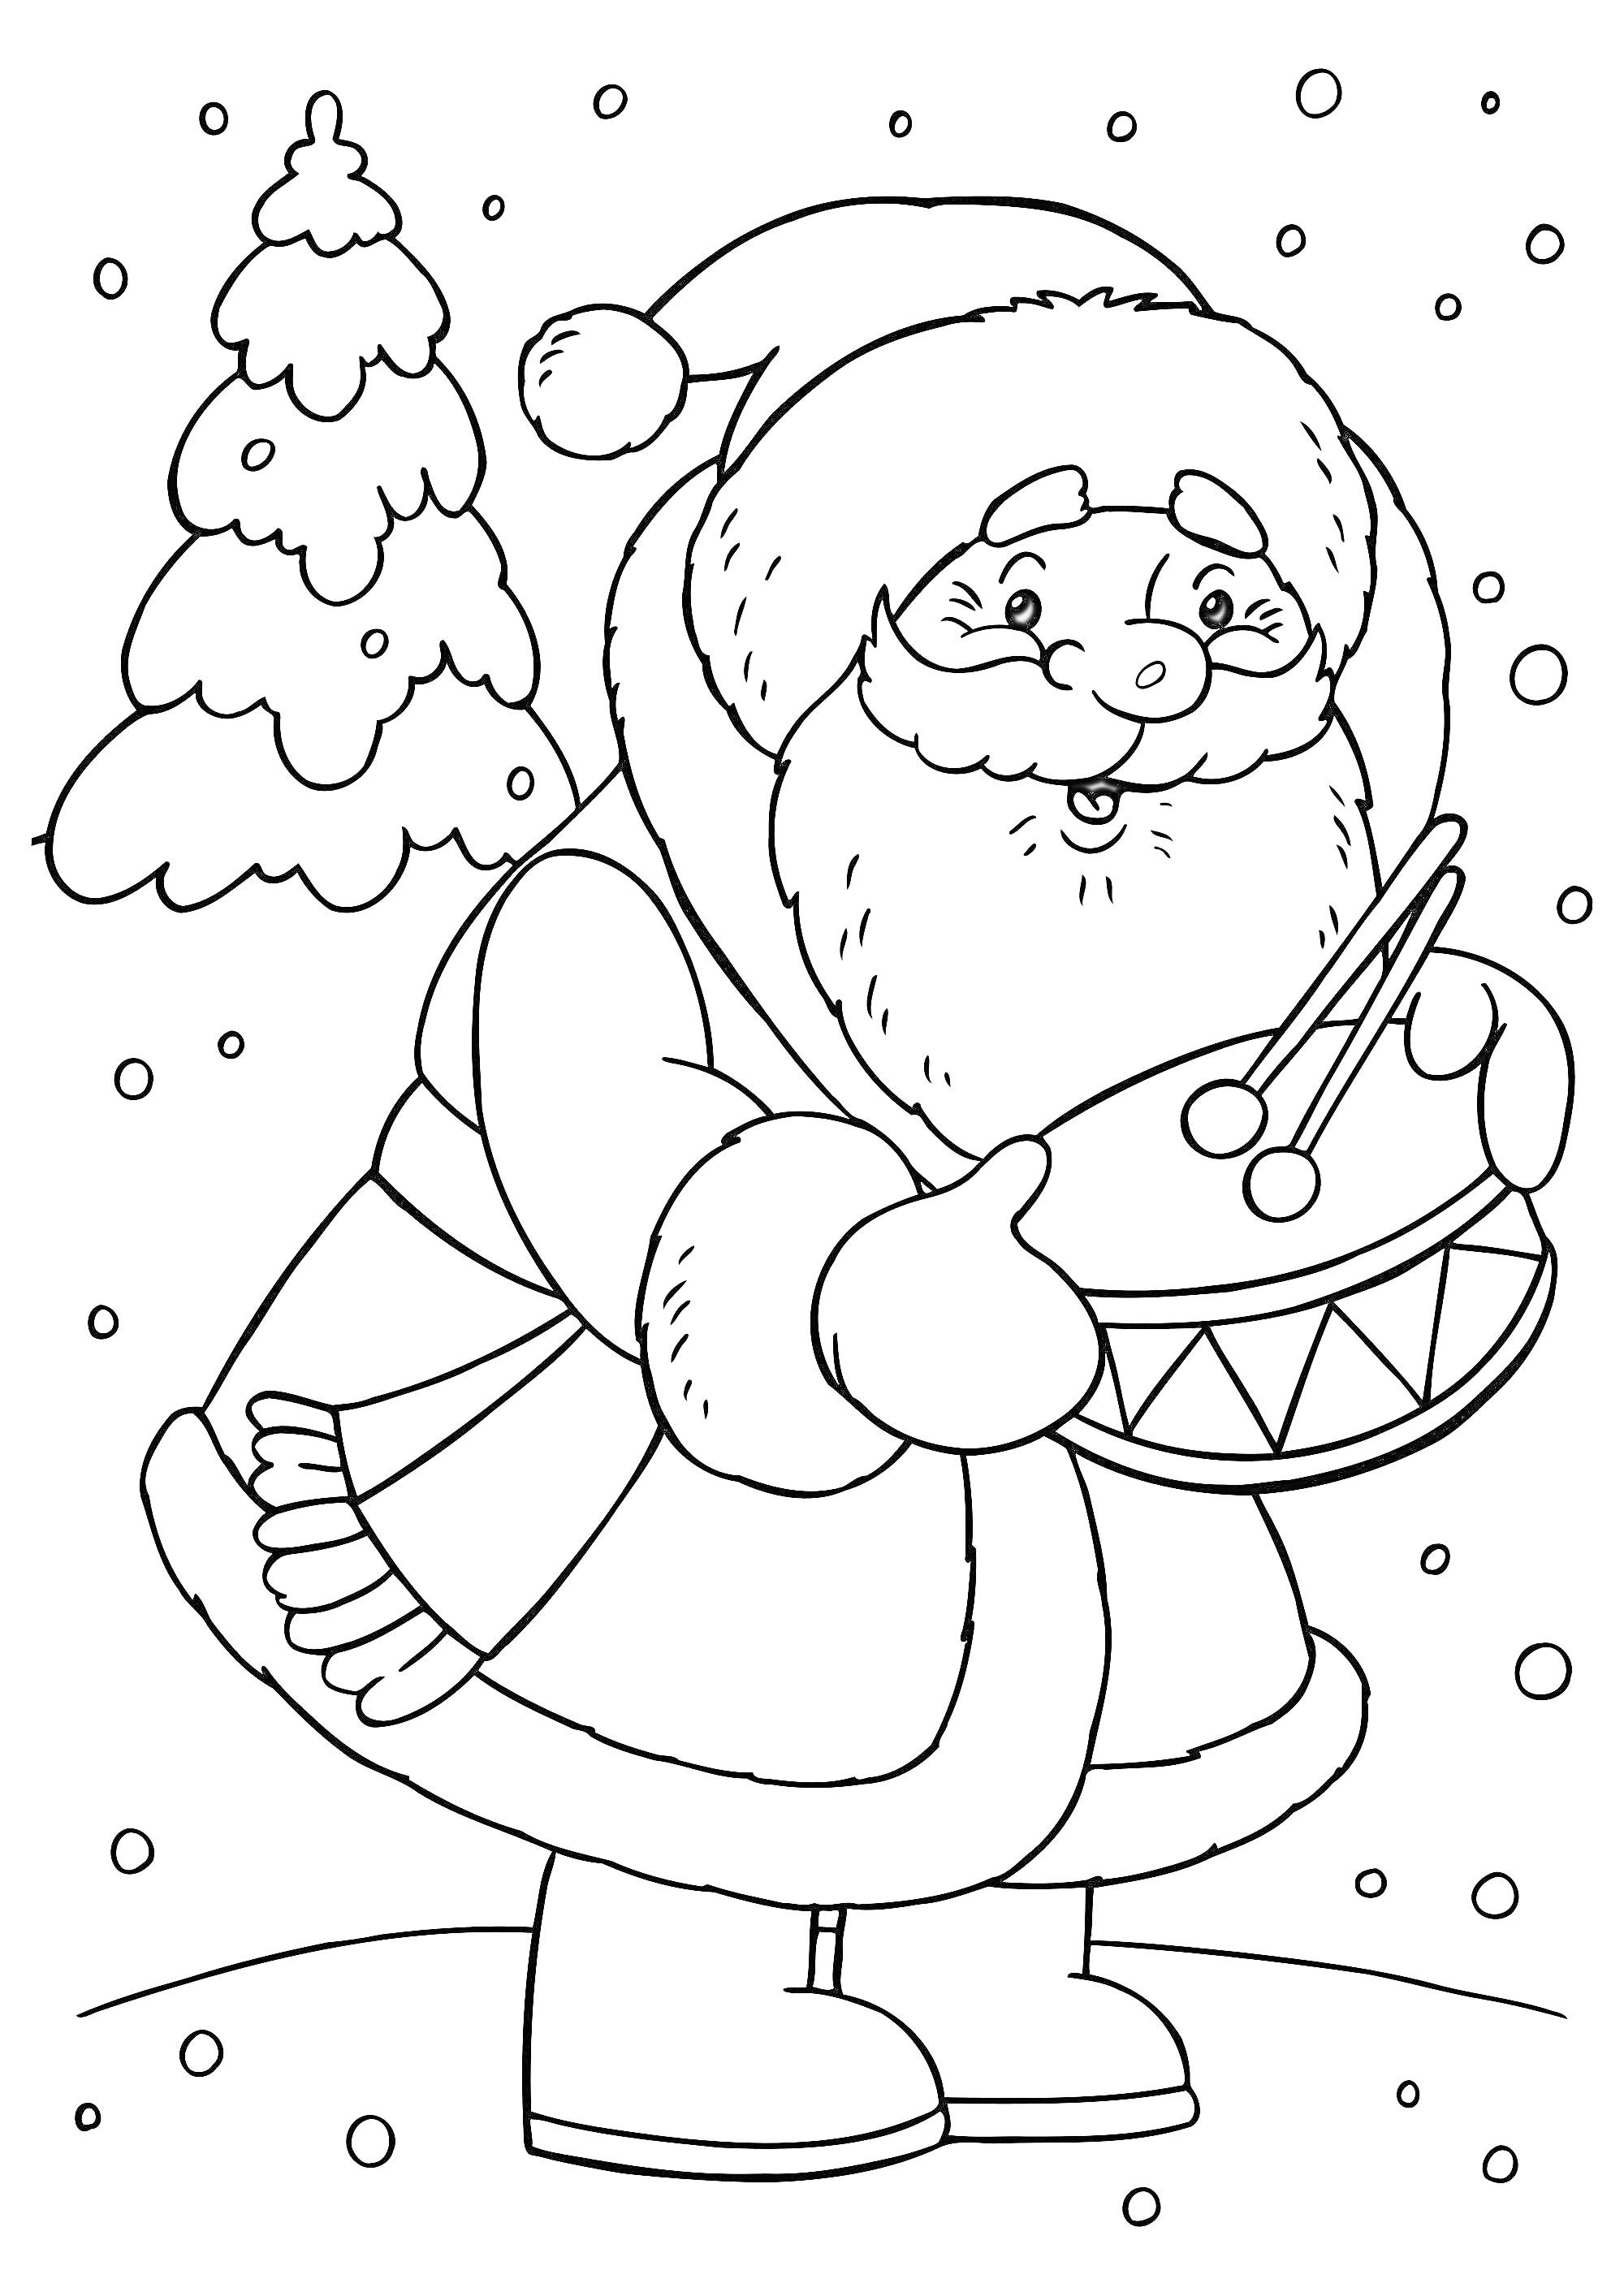 Санта Клаус с барабаном и елкой на заснеженном фоне